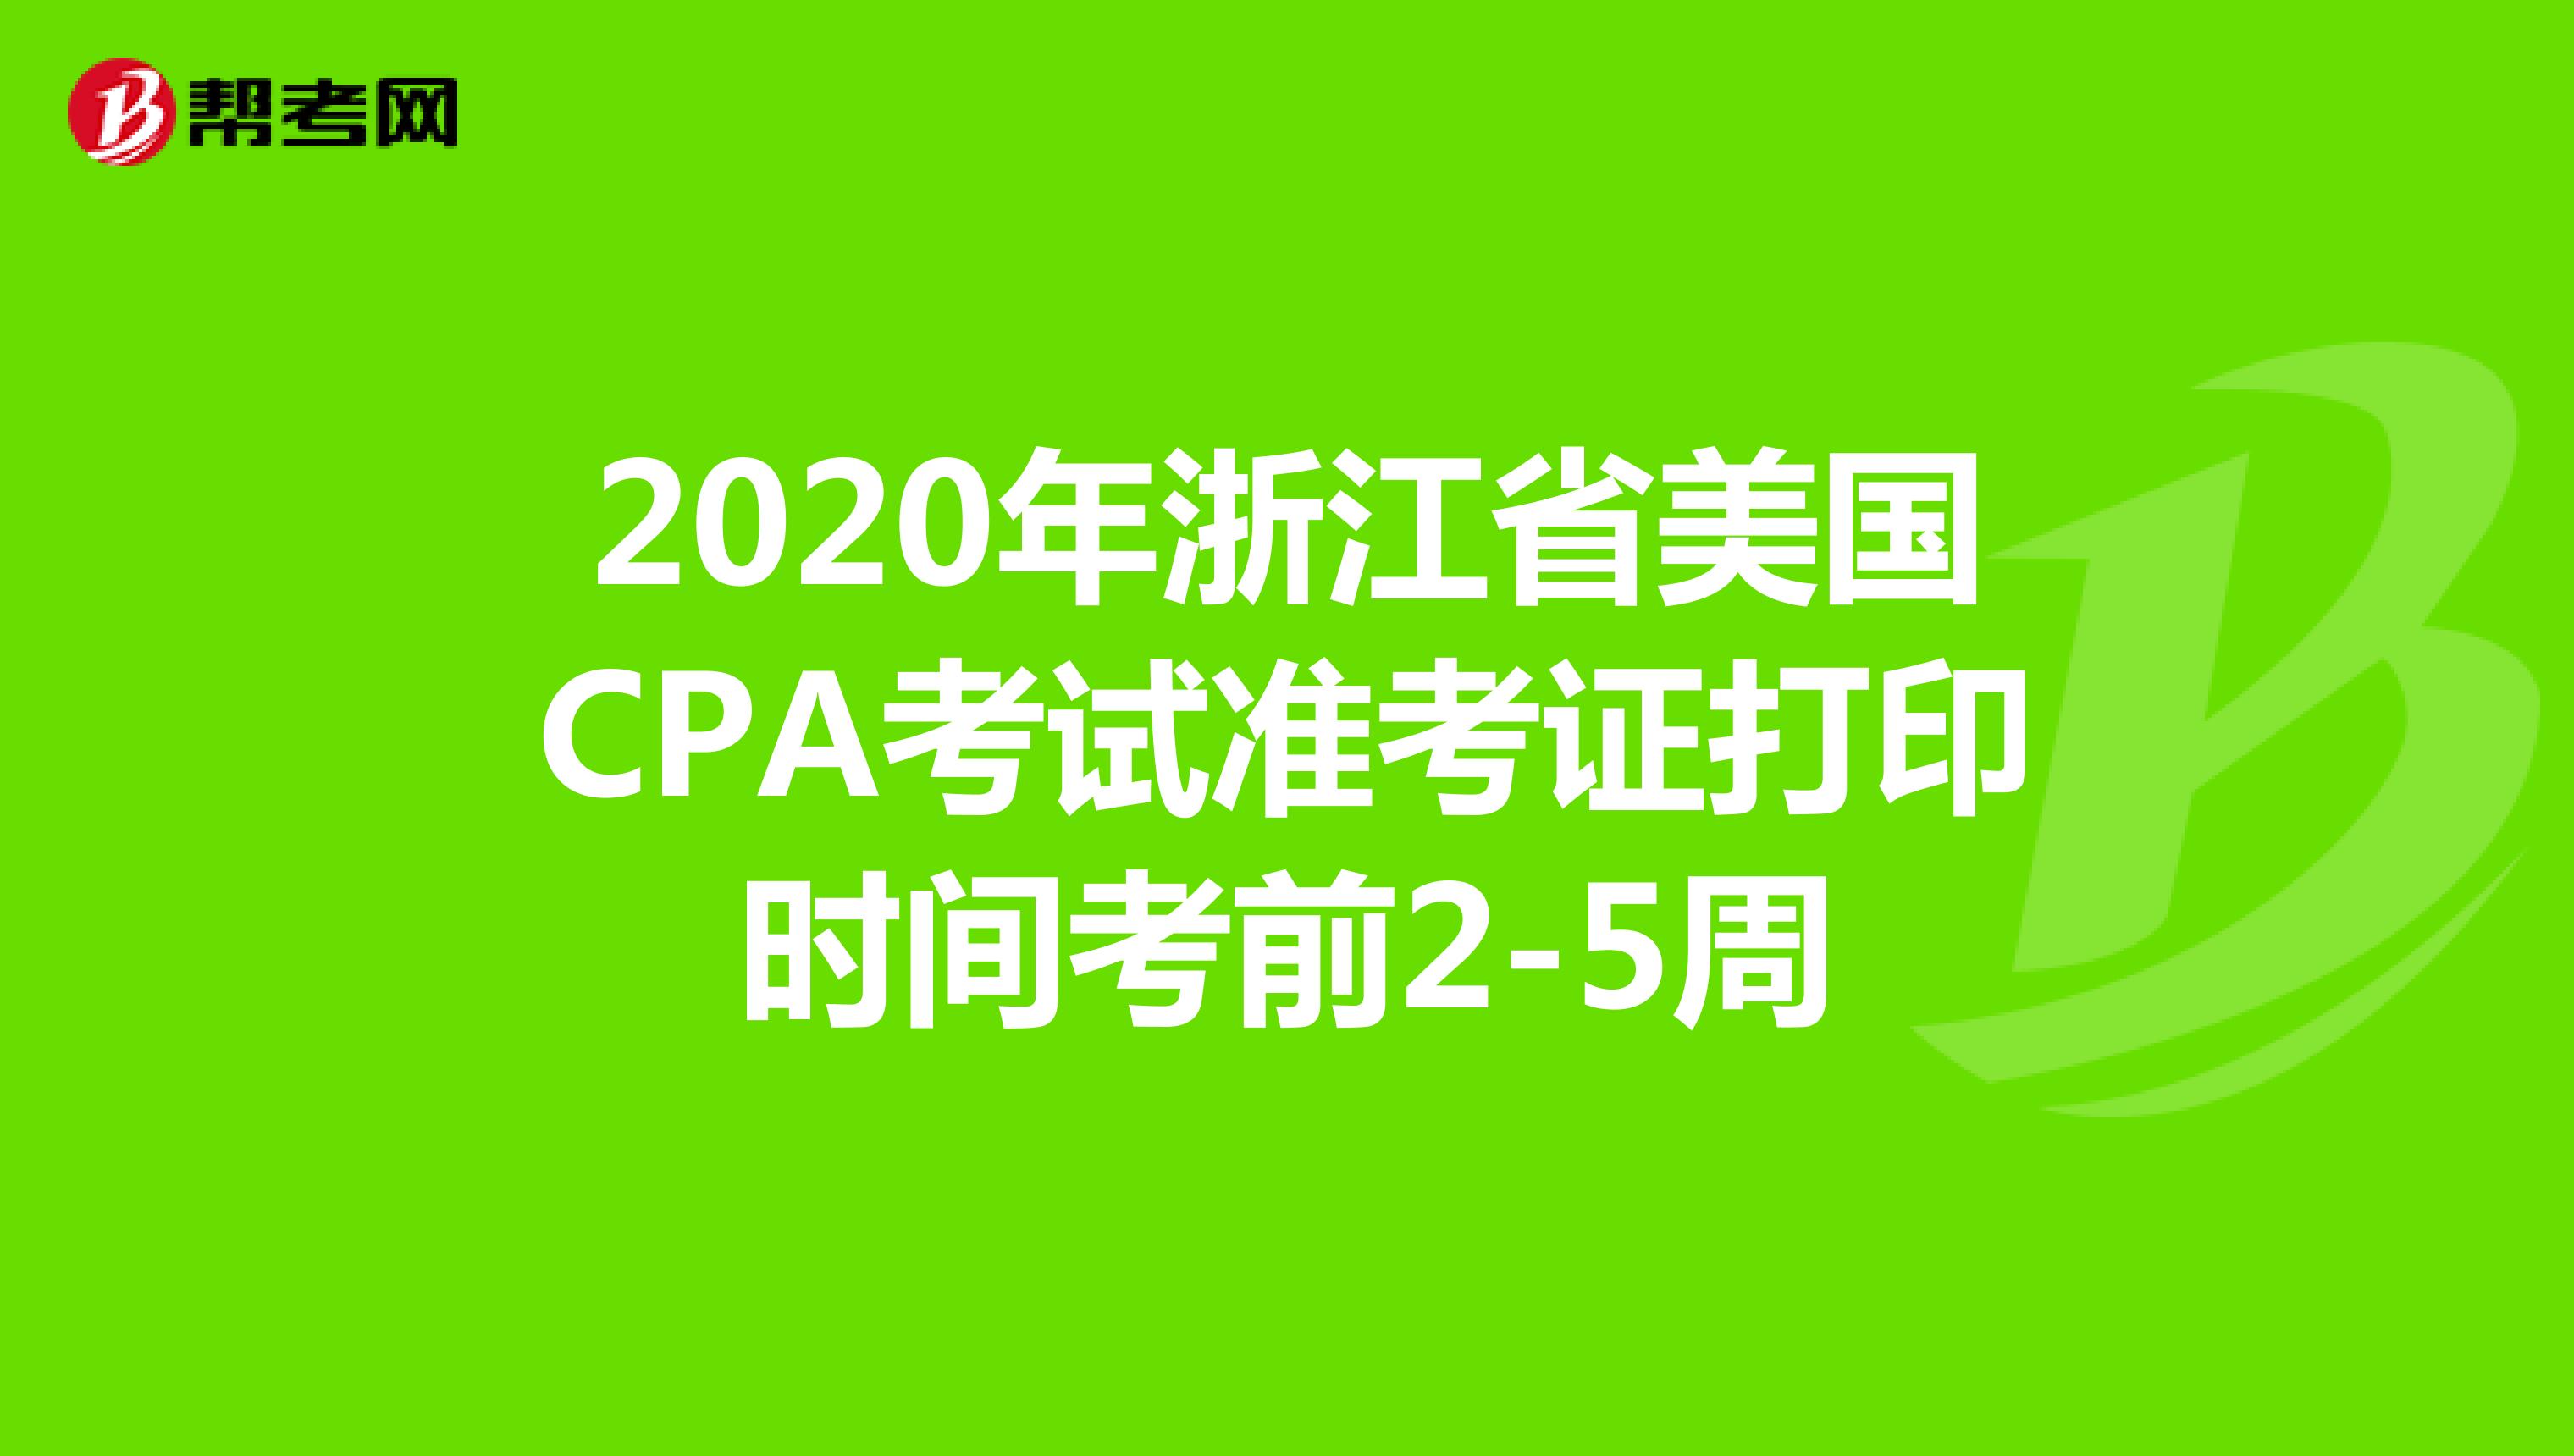 2020年浙江省美国CPA考试准考证打印时间考前2-5周